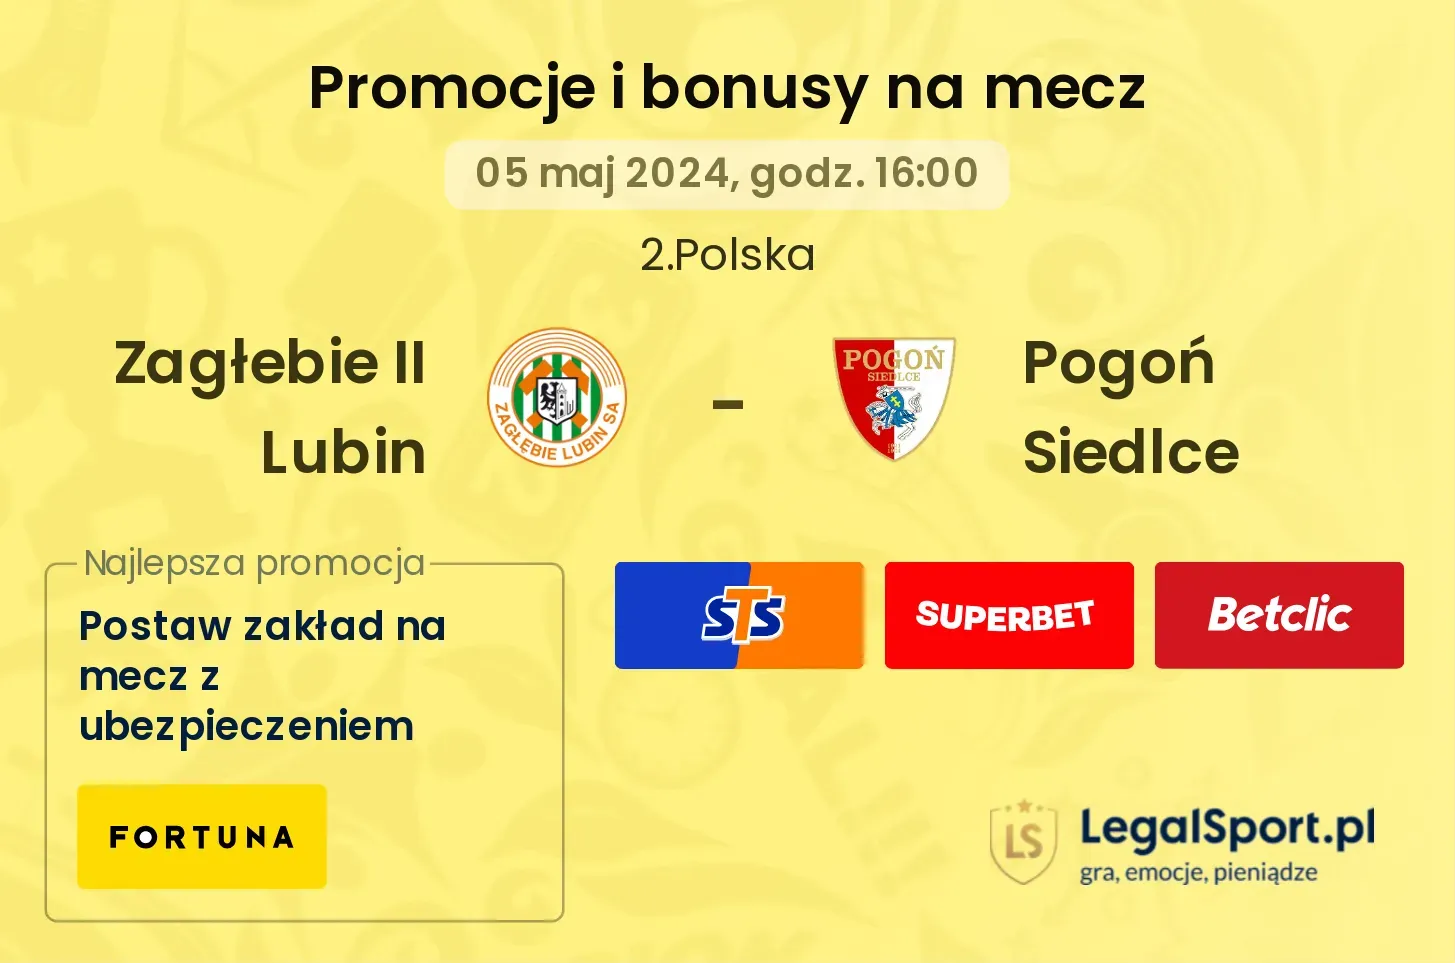 Zagłebie II Lubin - Pogoń Siedlce promocje bonusy na mecz